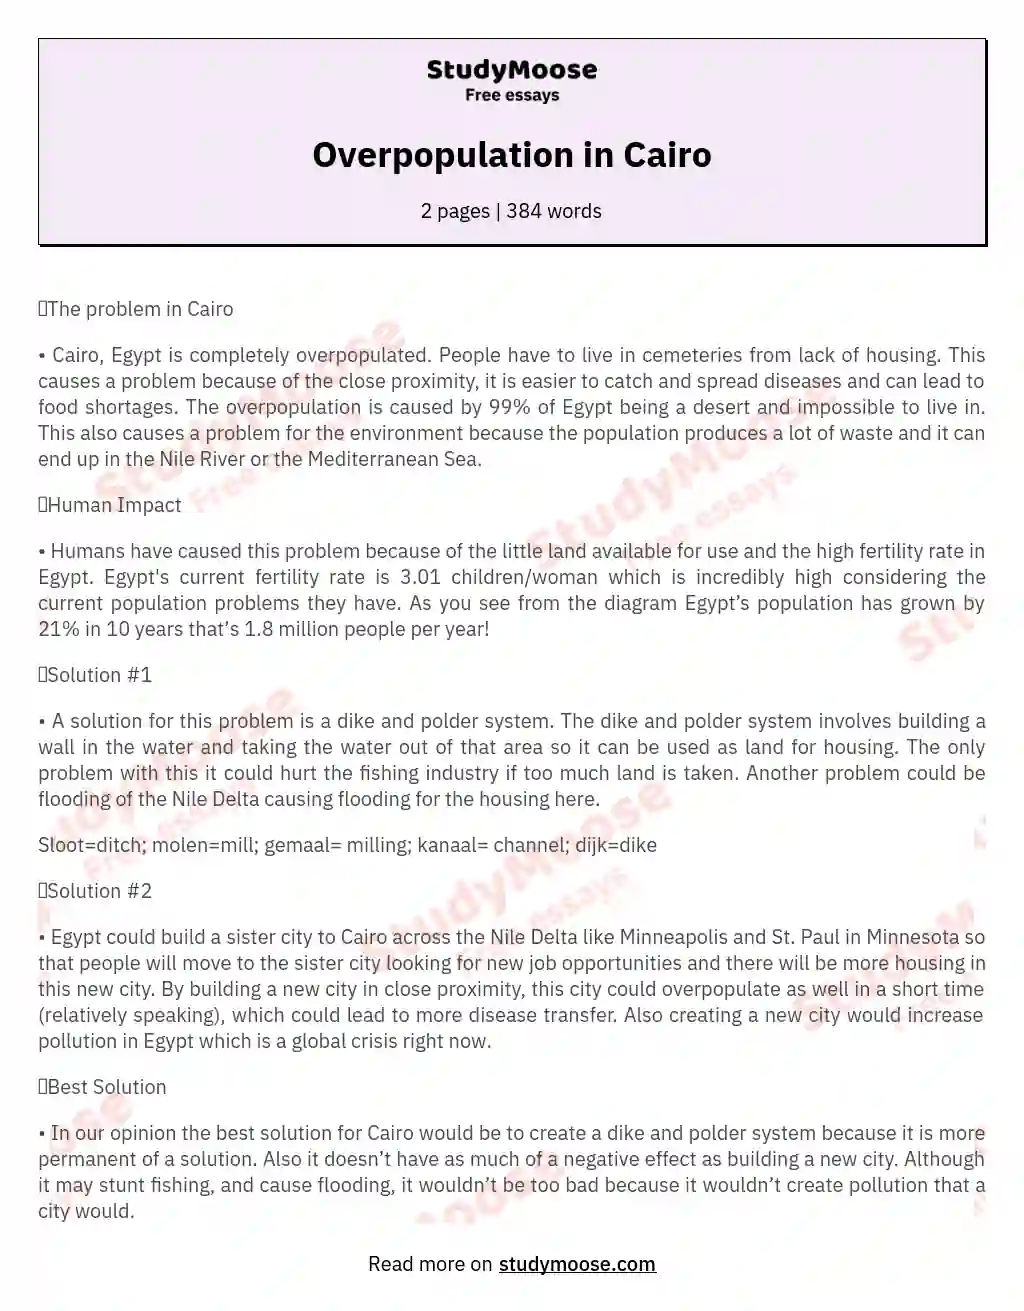 Overpopulation in Cairo